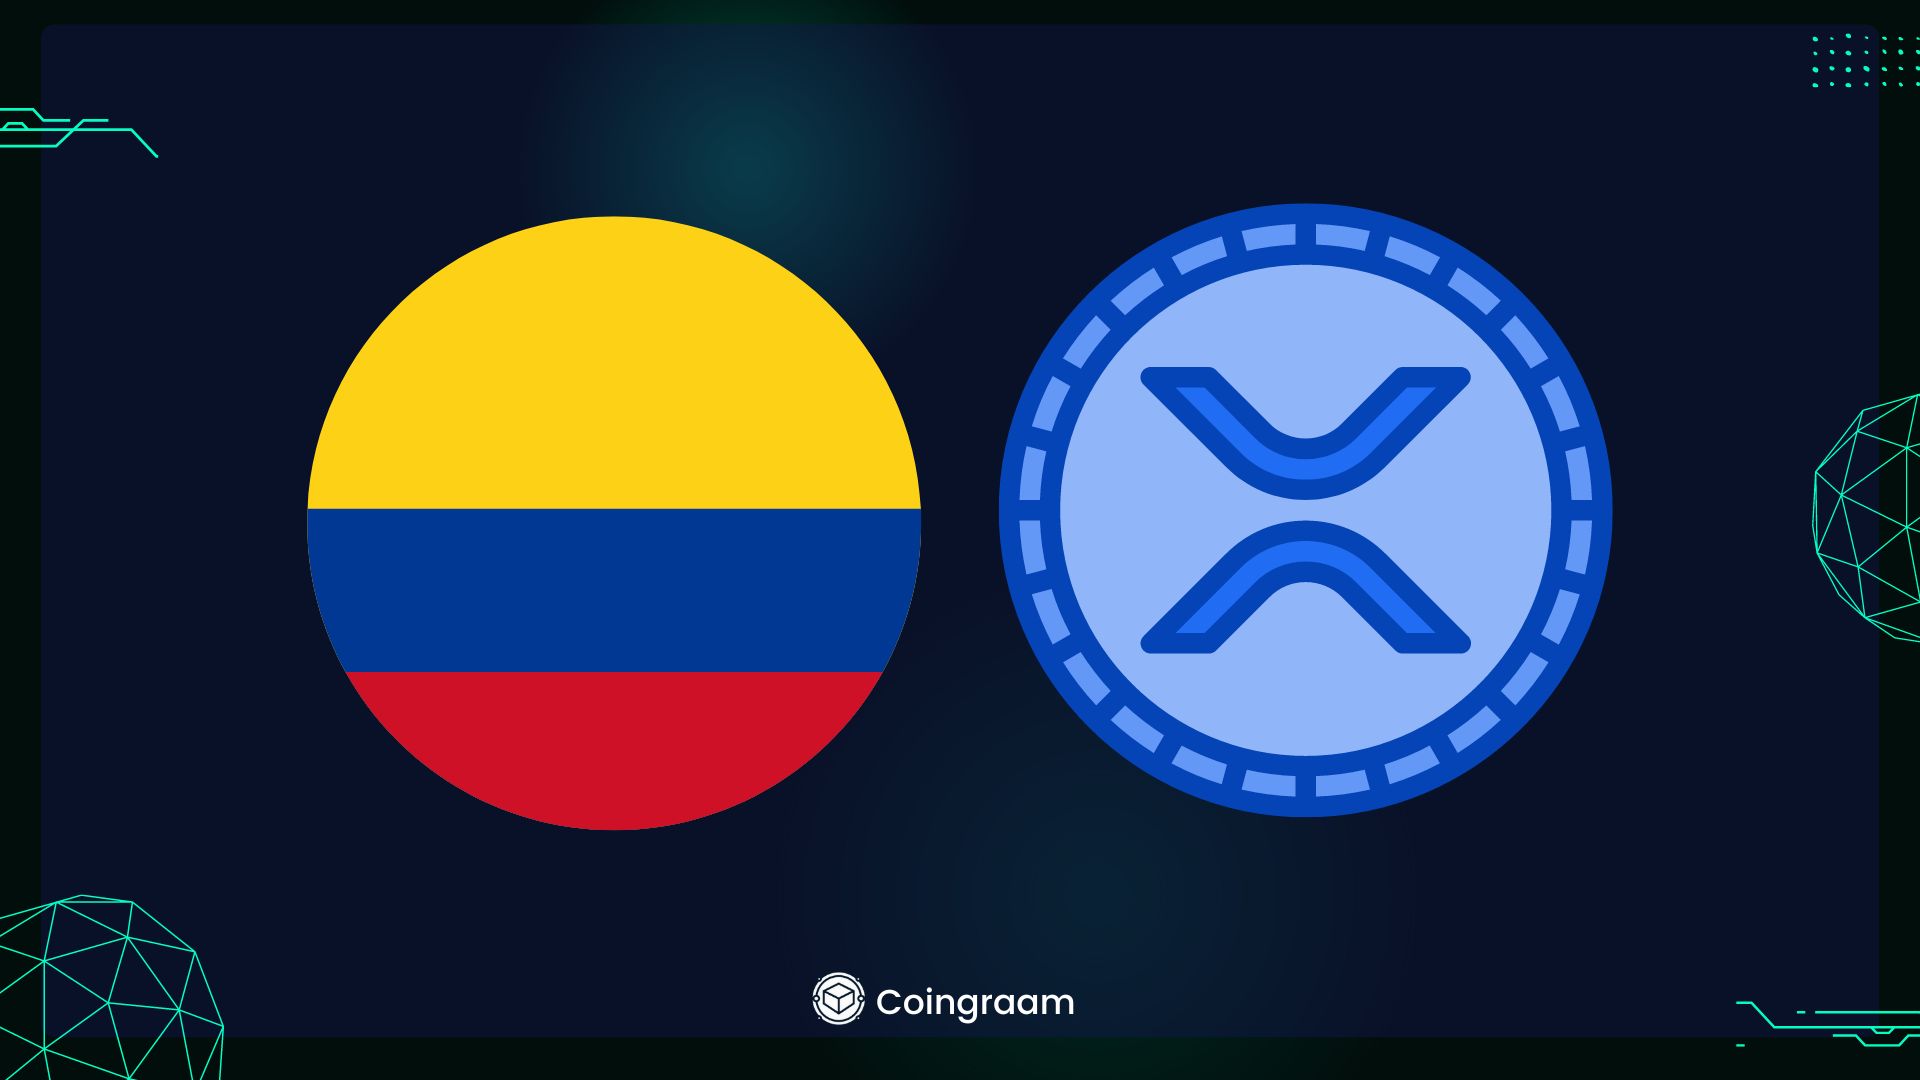 کلمبیا از ریپل برای آزمایش ارز دیجیتال بانک مرکزی خود استفاده می‌کند

